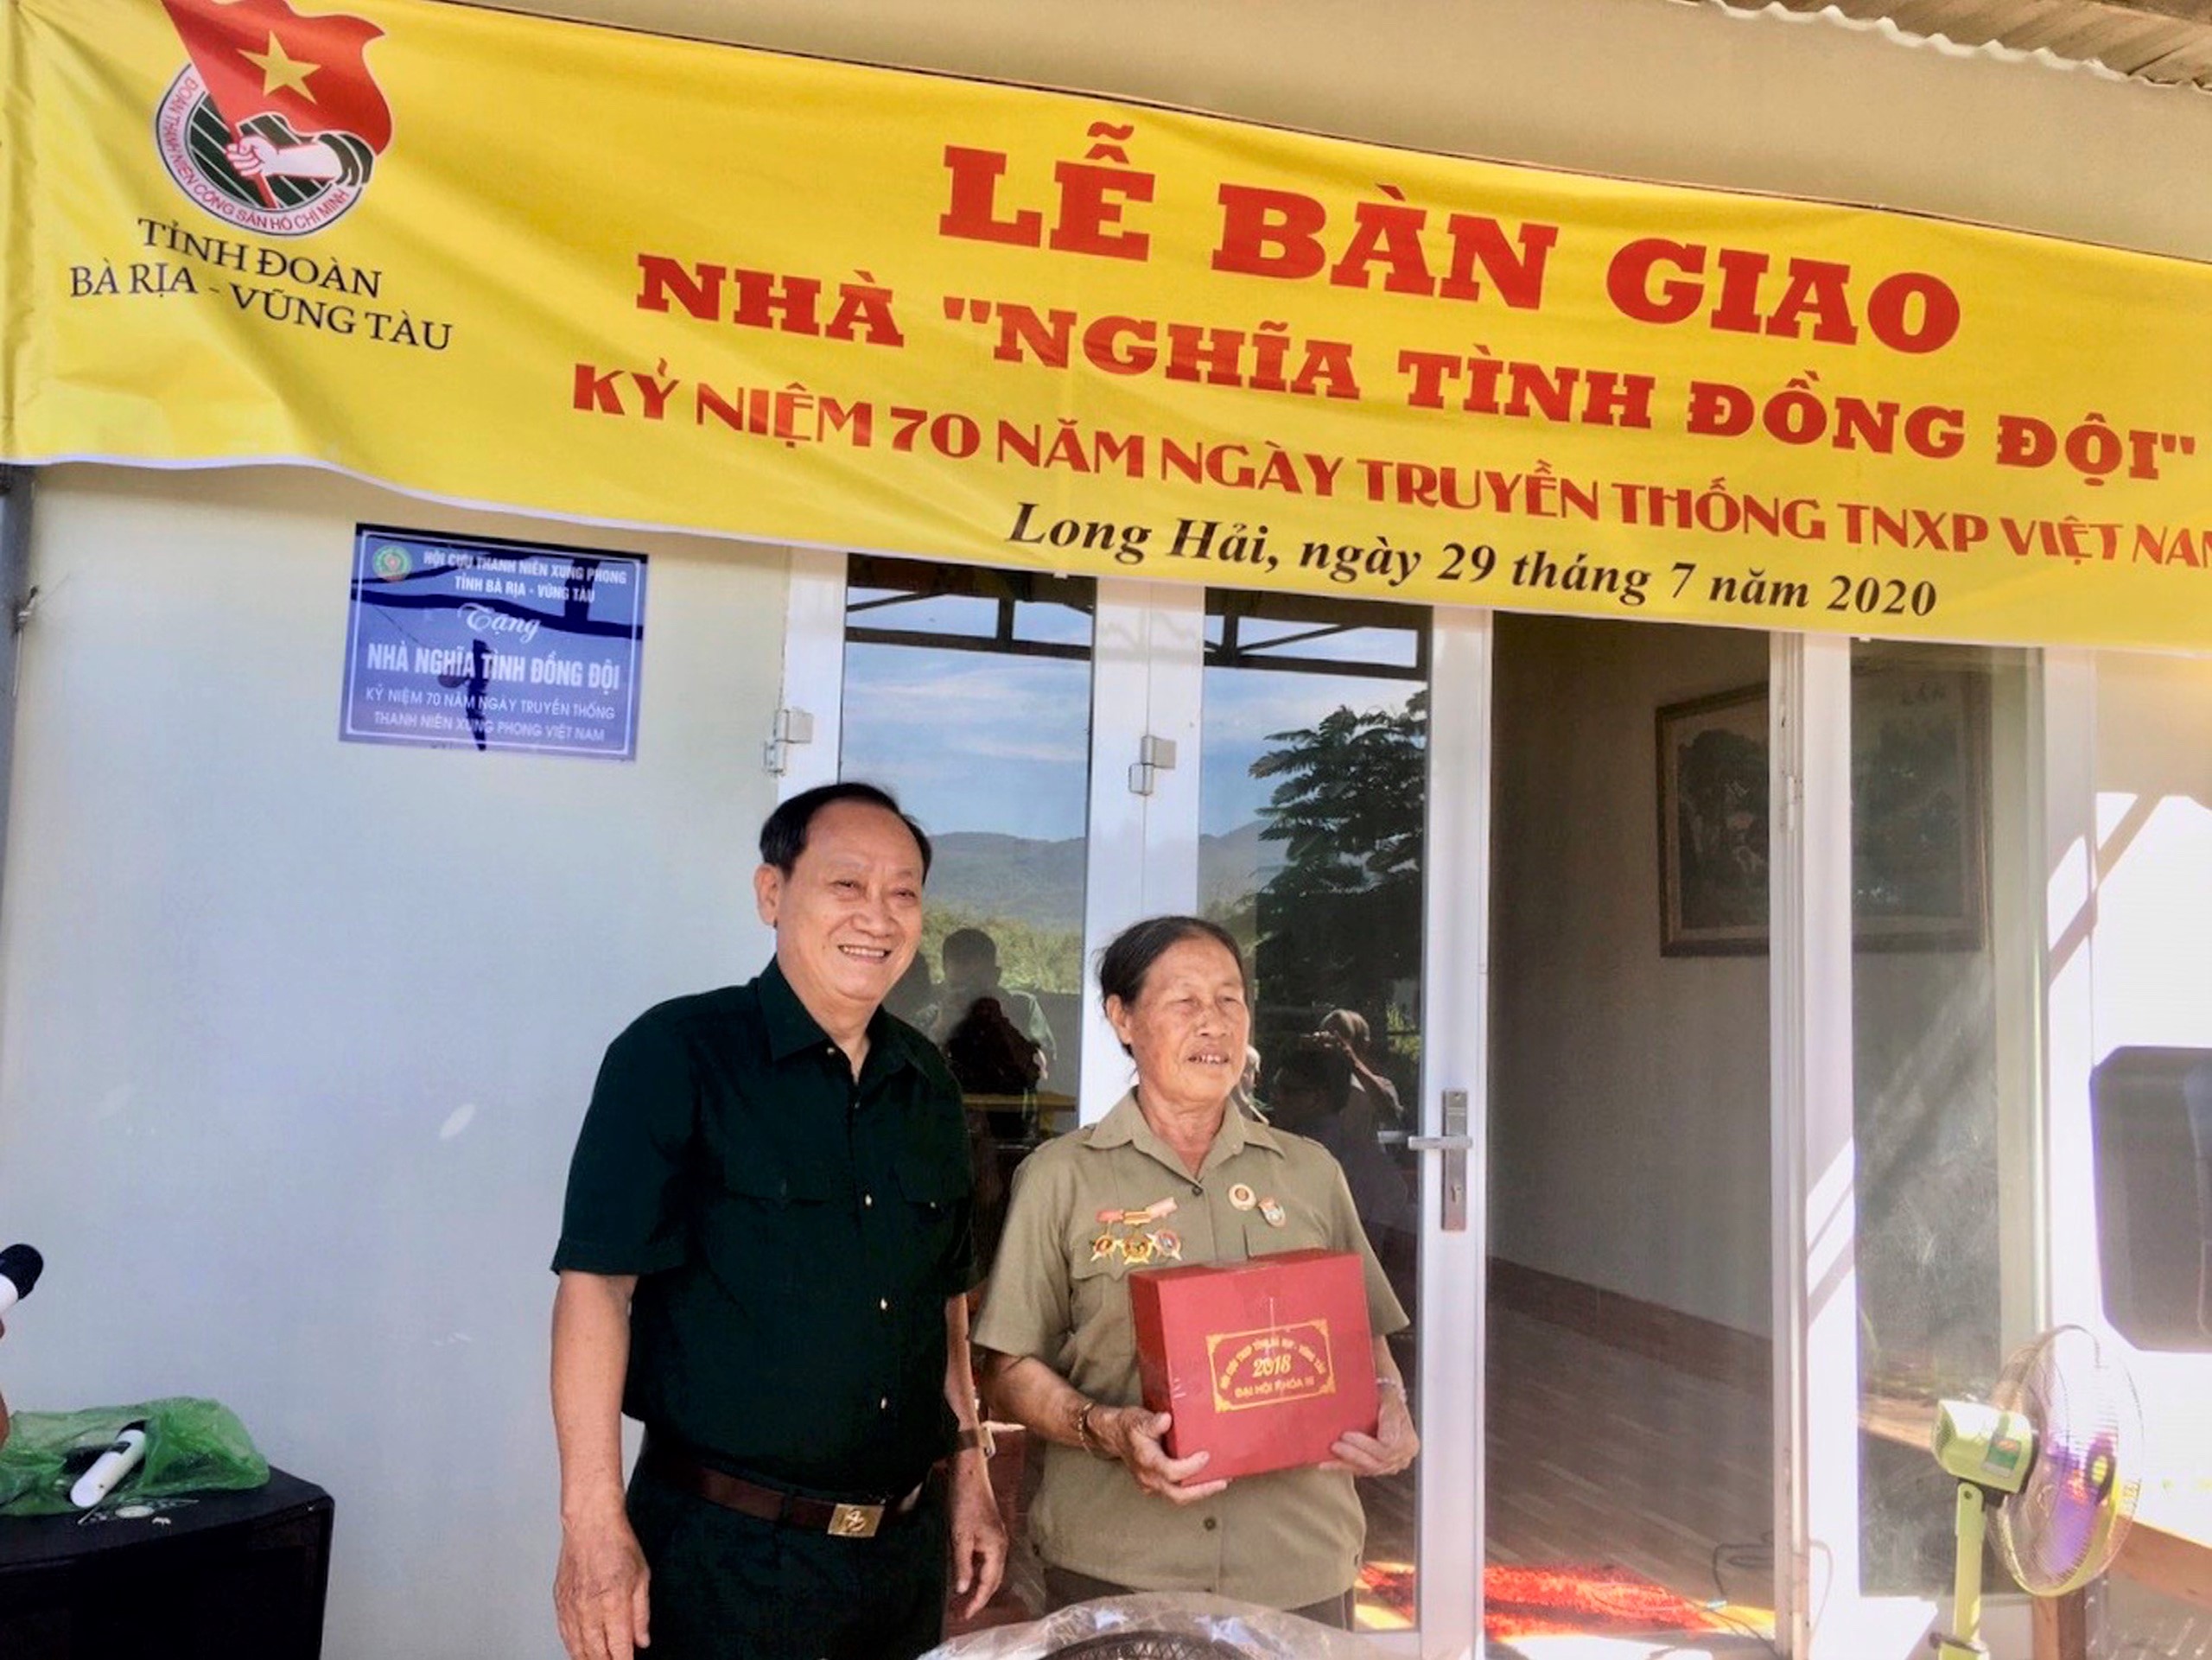 Ông Nguyễn Như Hải, Chủ tịch Hội Cựu TNXP tỉnh tặng quà cho bà Tô Thị Nguyệt tại lễ bàn giao nhà.